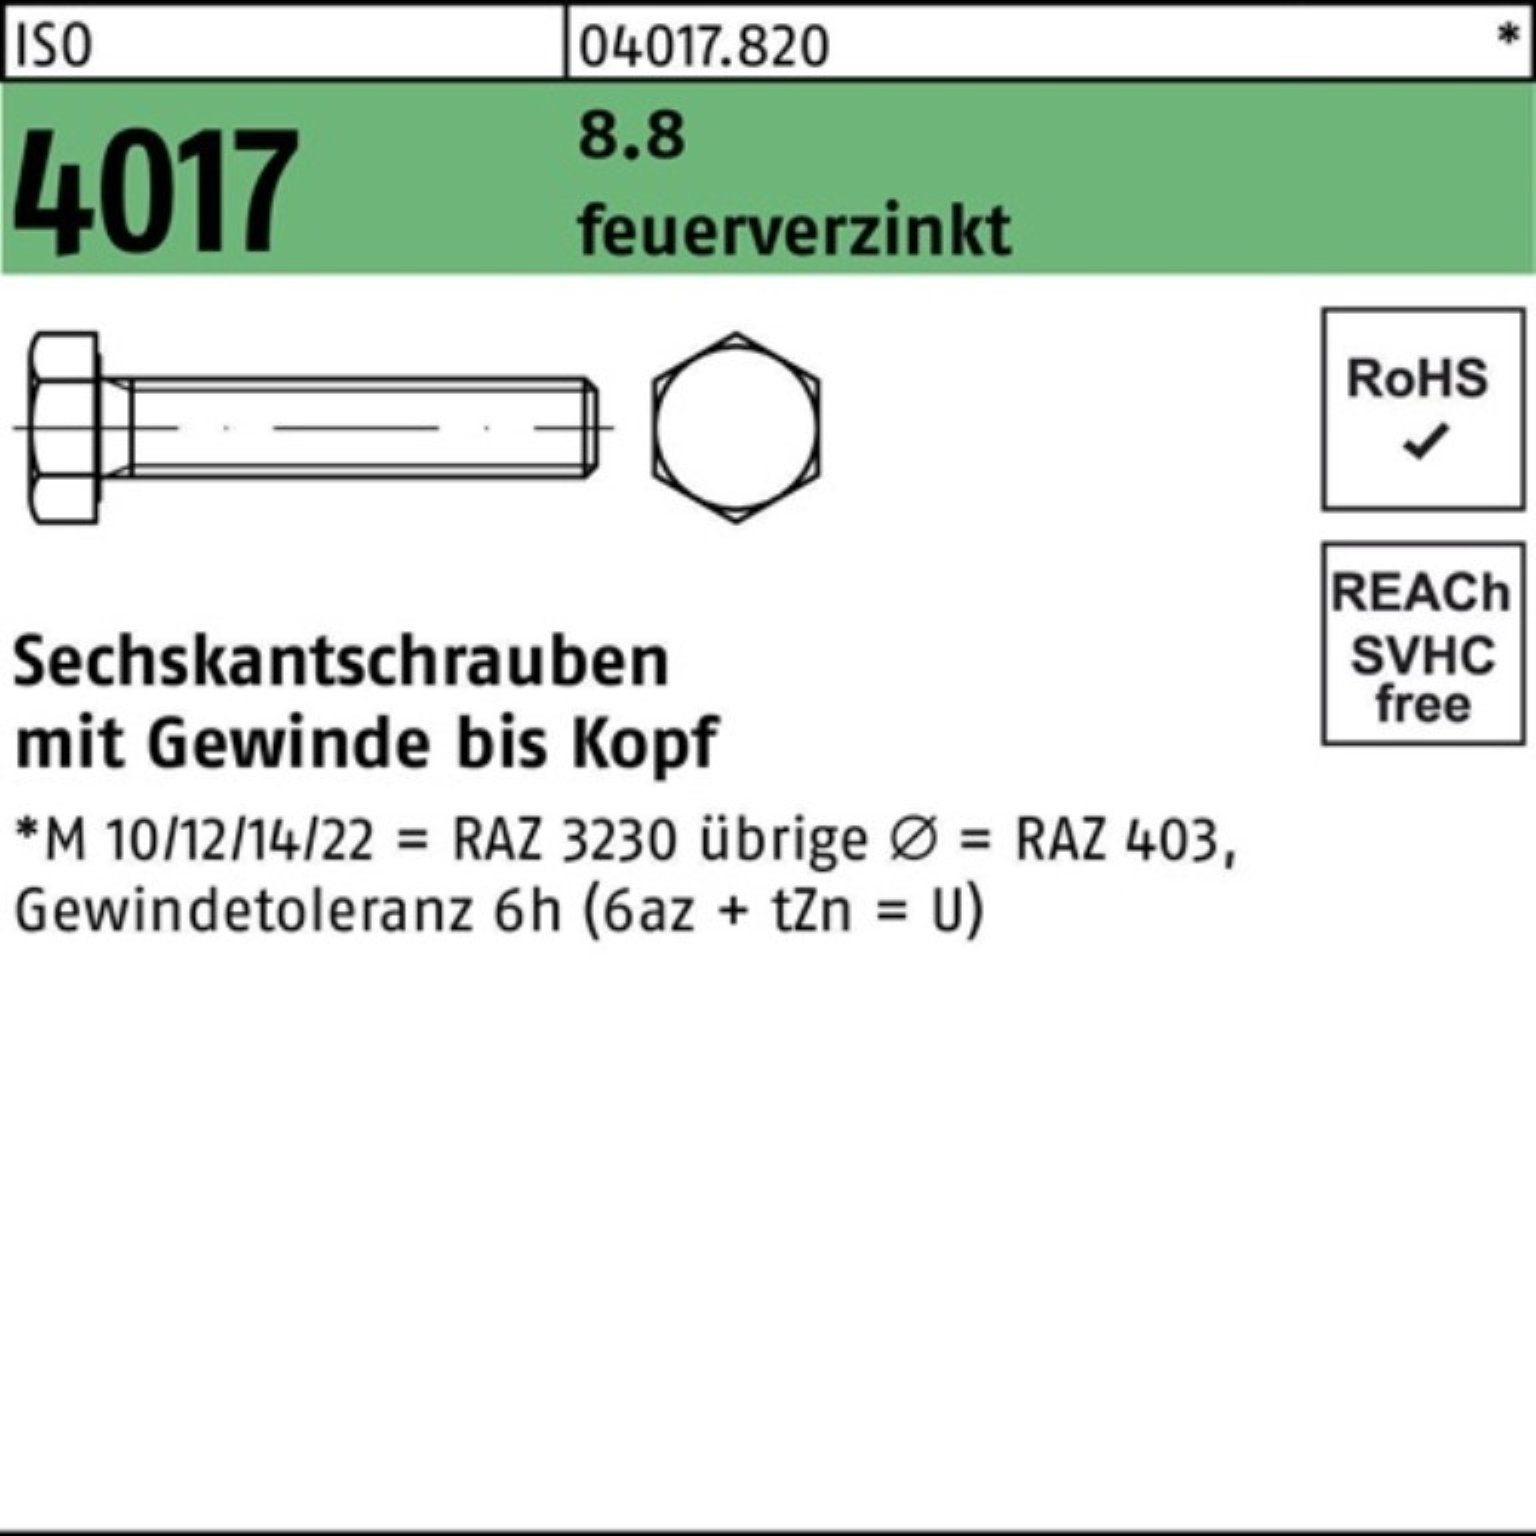 Bufab Sechskantschraube 100er Pack Sechskantschraube ISO 4017 VG M16x 50 8.8 feuerverz. 50 St